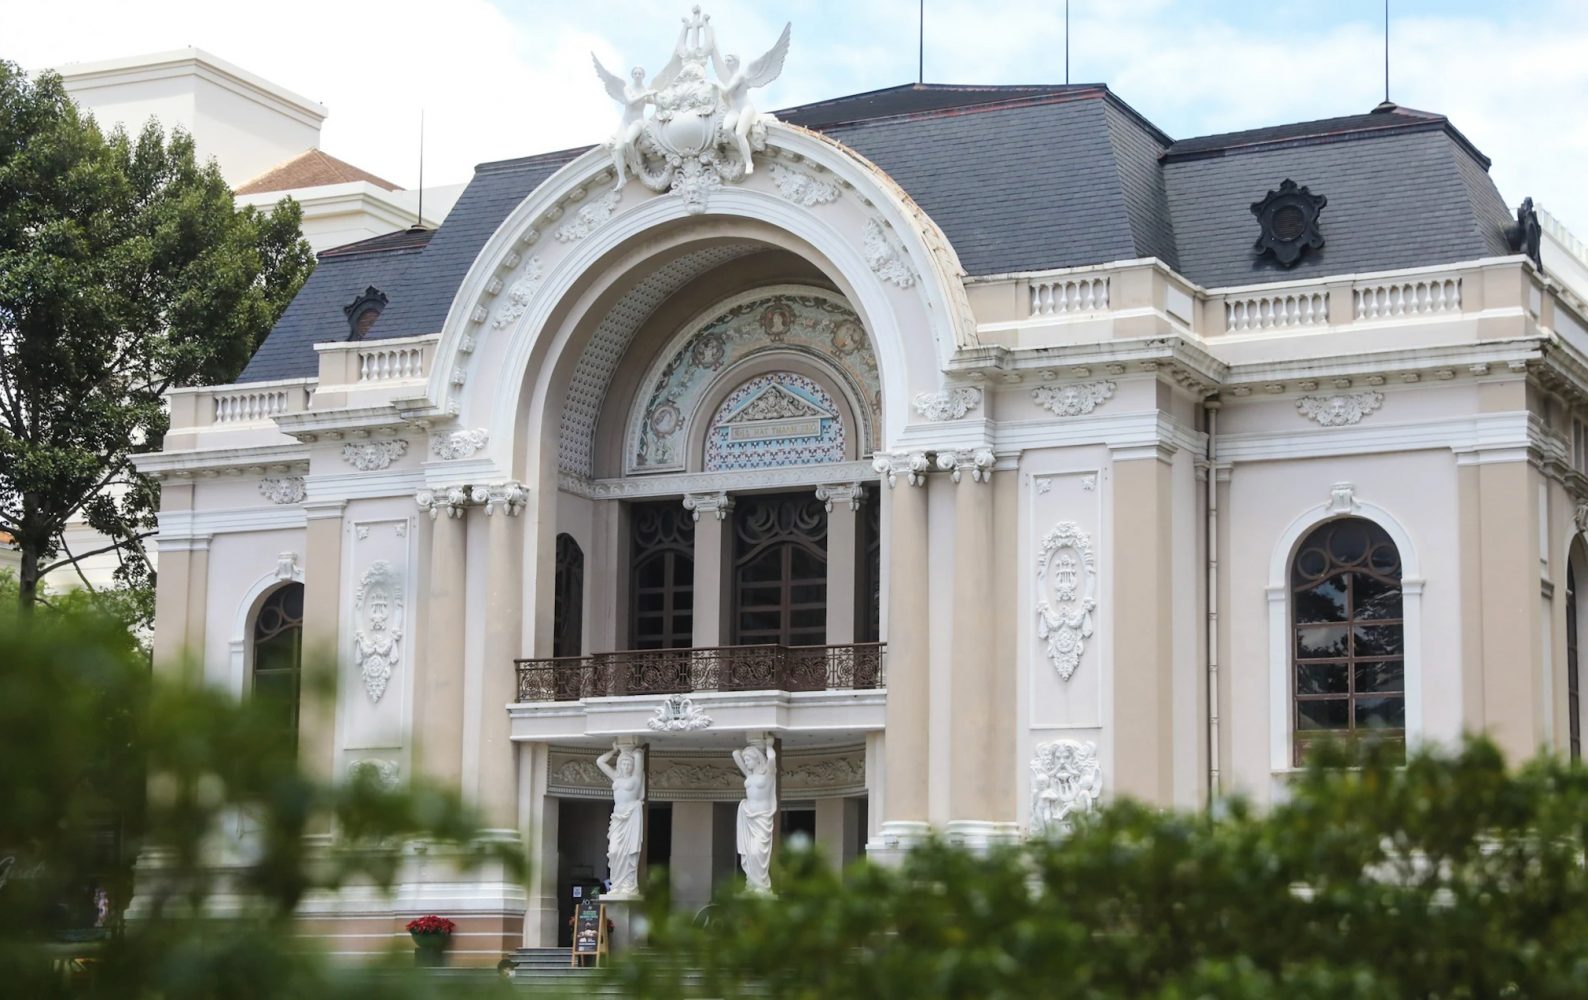 Địa điểm du lịch Sài Gòn: Nhà hát Thành phố